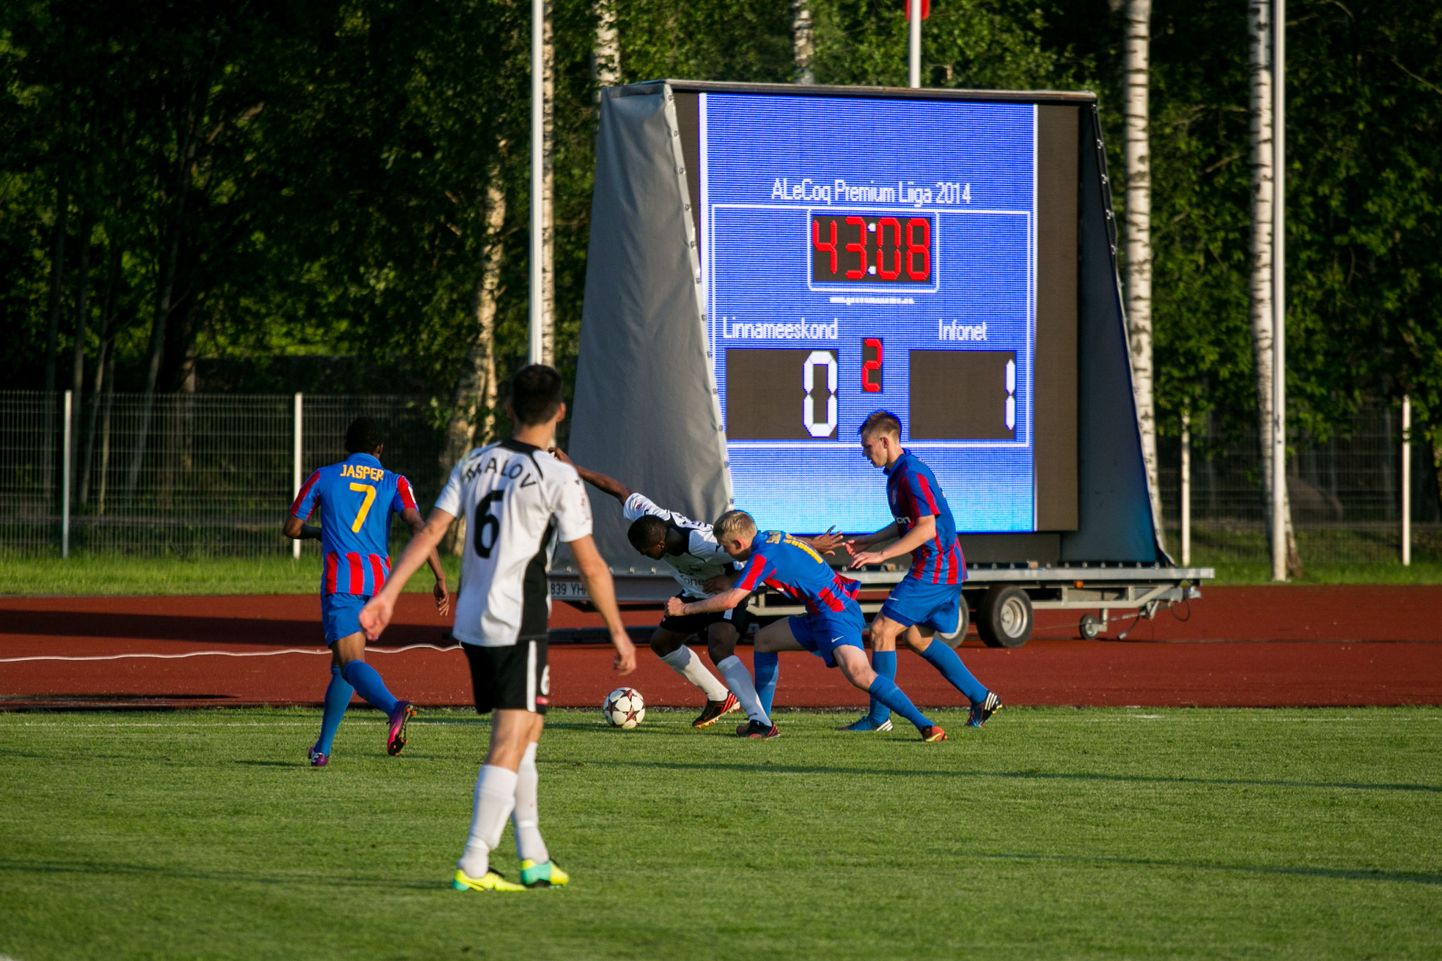 Paide linnameeskond - Tallinna FC Infonet (0-1).
DMITRI KOTJUH, JÄRVA TEATAJA/SCANPIX